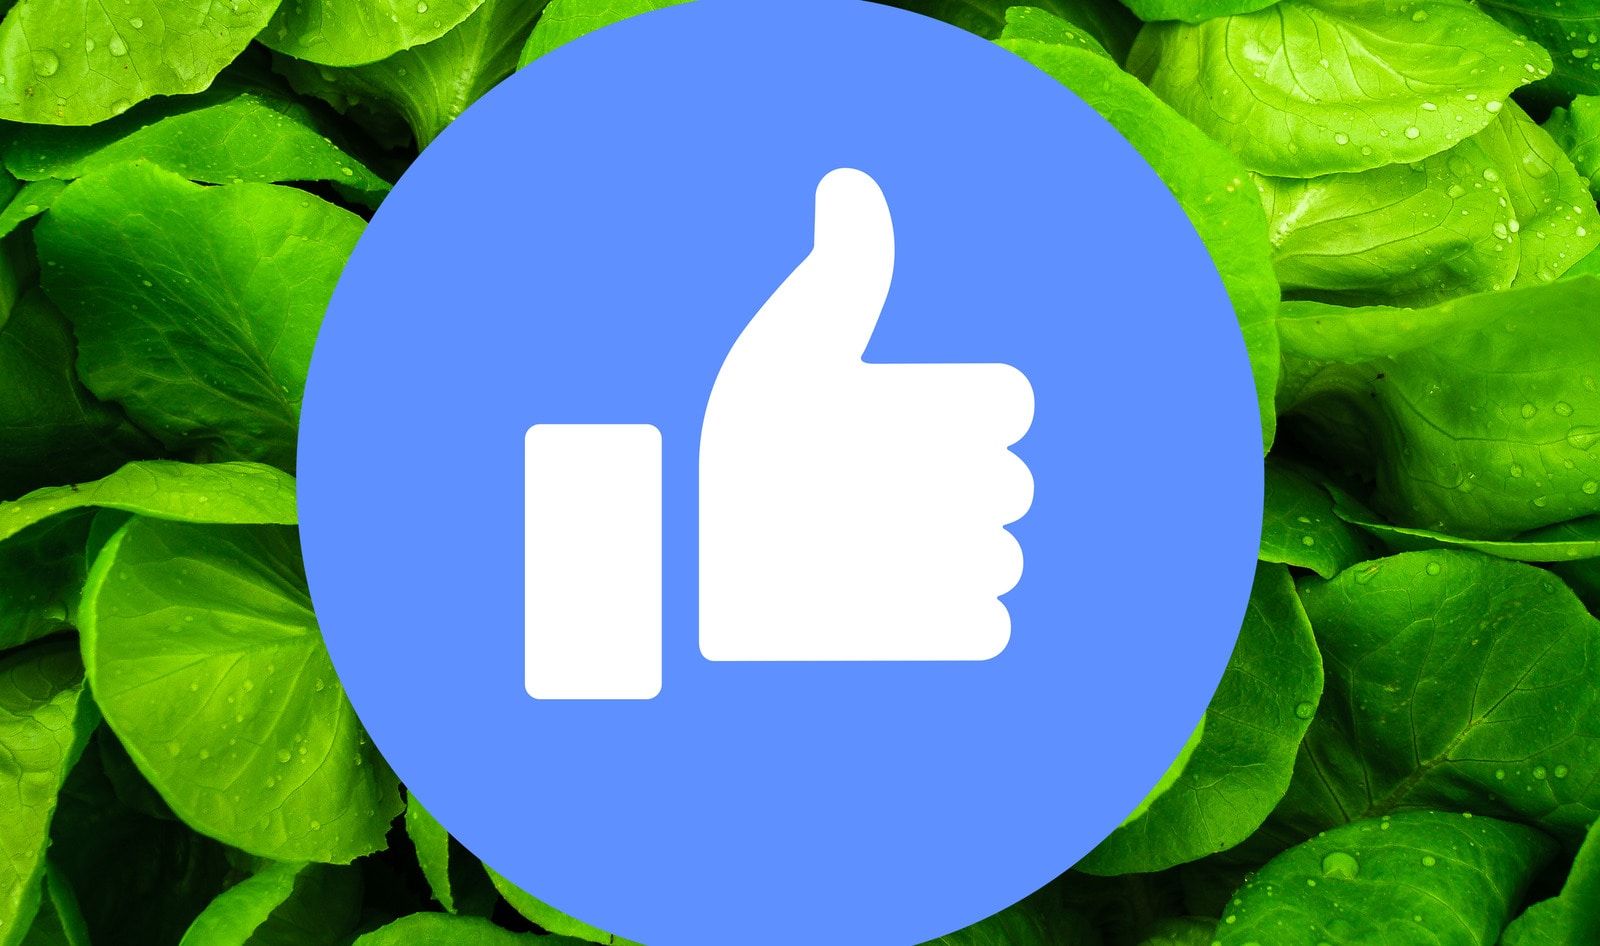 New “Vegan Facebook” Brings Together Vegan Community